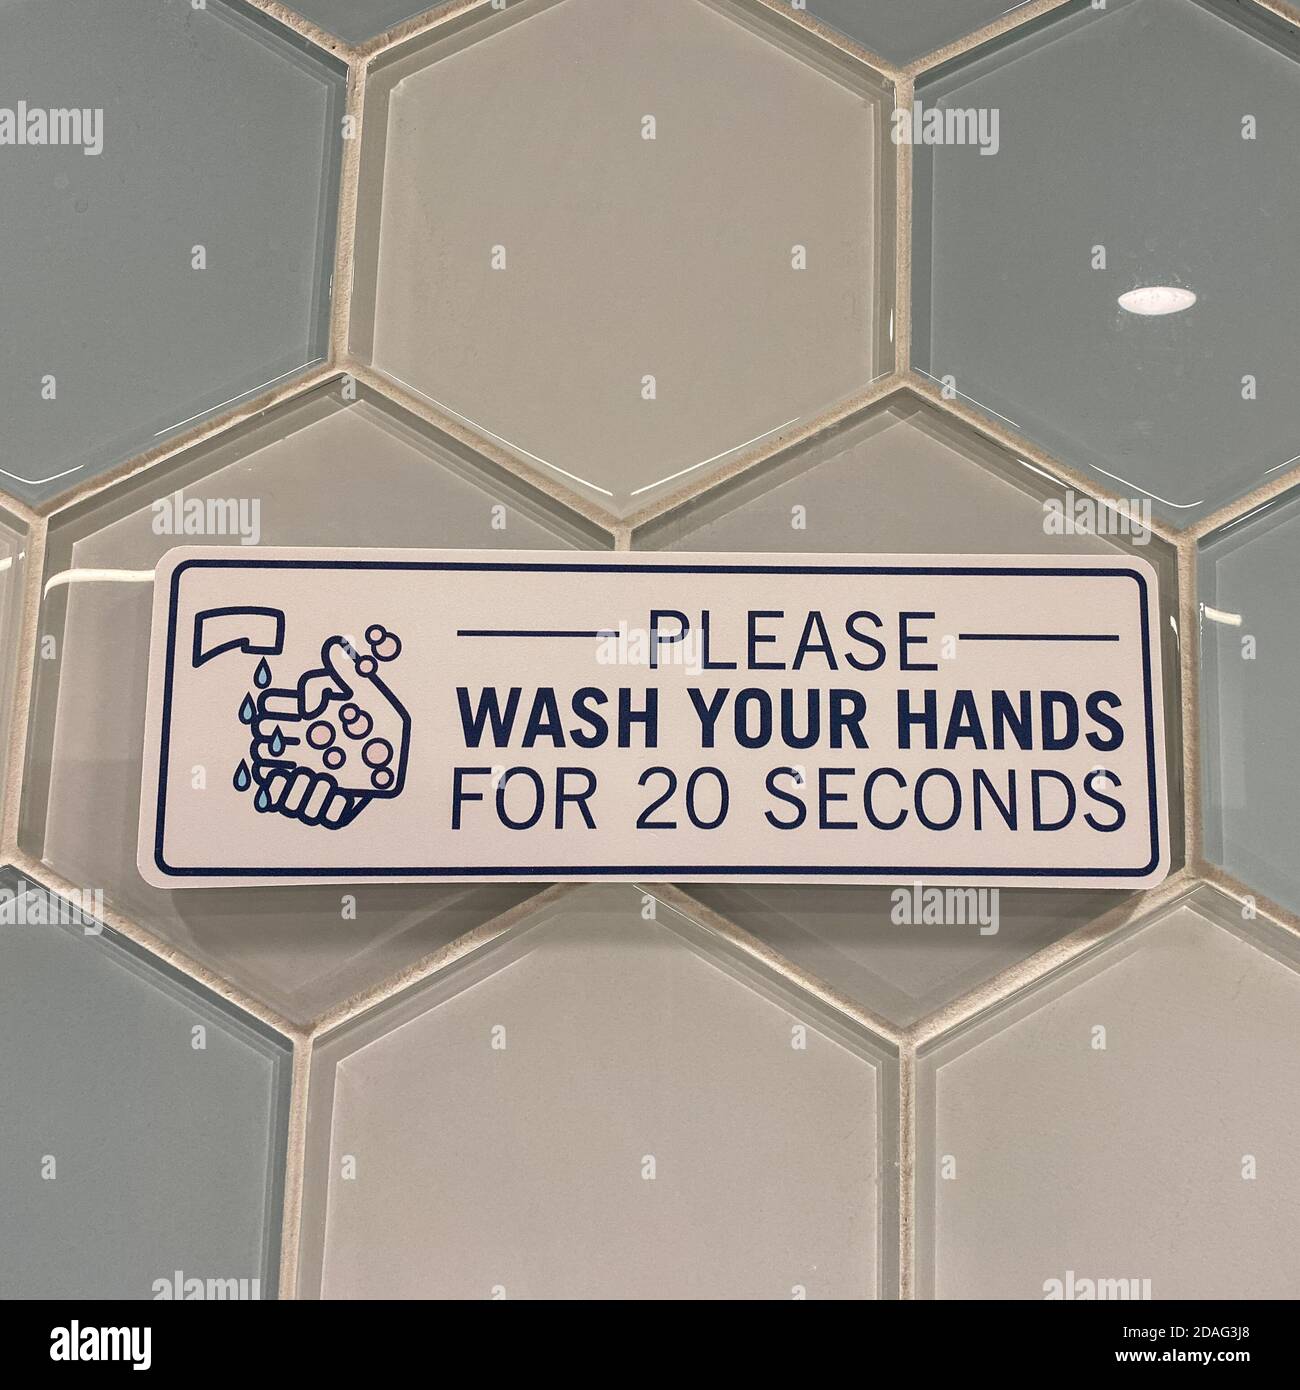 Ein Schild in einer öffentlichen Toilette, das die Leute auffordert, sich wegen der Coronavirus-Pandemie 20 Sekunden lang die Hände zu waschen. Stockfoto